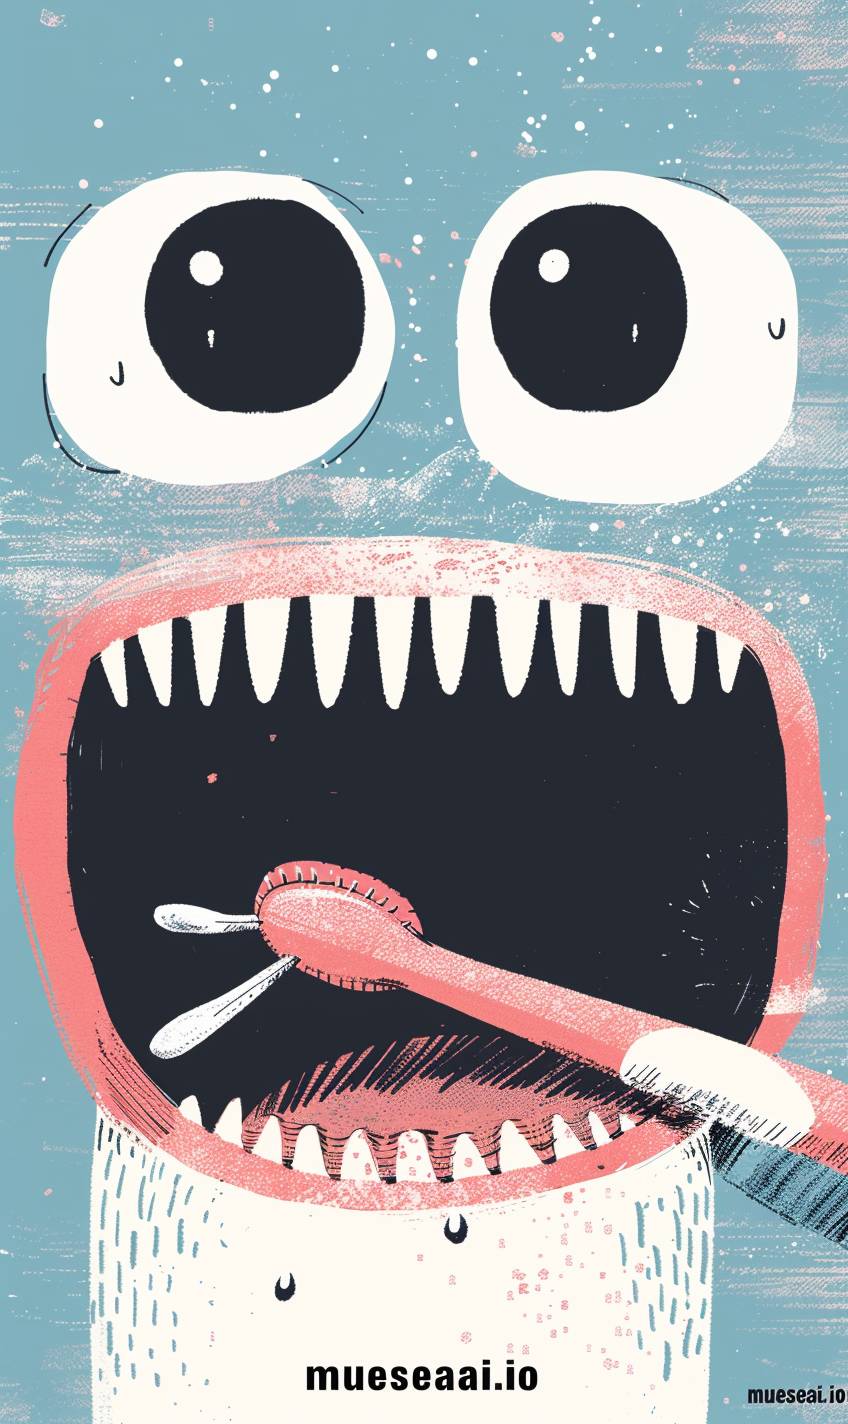 Gemma Correllのスタイルで、奇抜なキャラクターデザインとフラットでパステルカラーのスタイルで、極端なクローズアップの2つの黒い目と口に、可愛いピンクの歯ブラシを口にした“mueseai.io”のテキストのシンプルなイラスト。